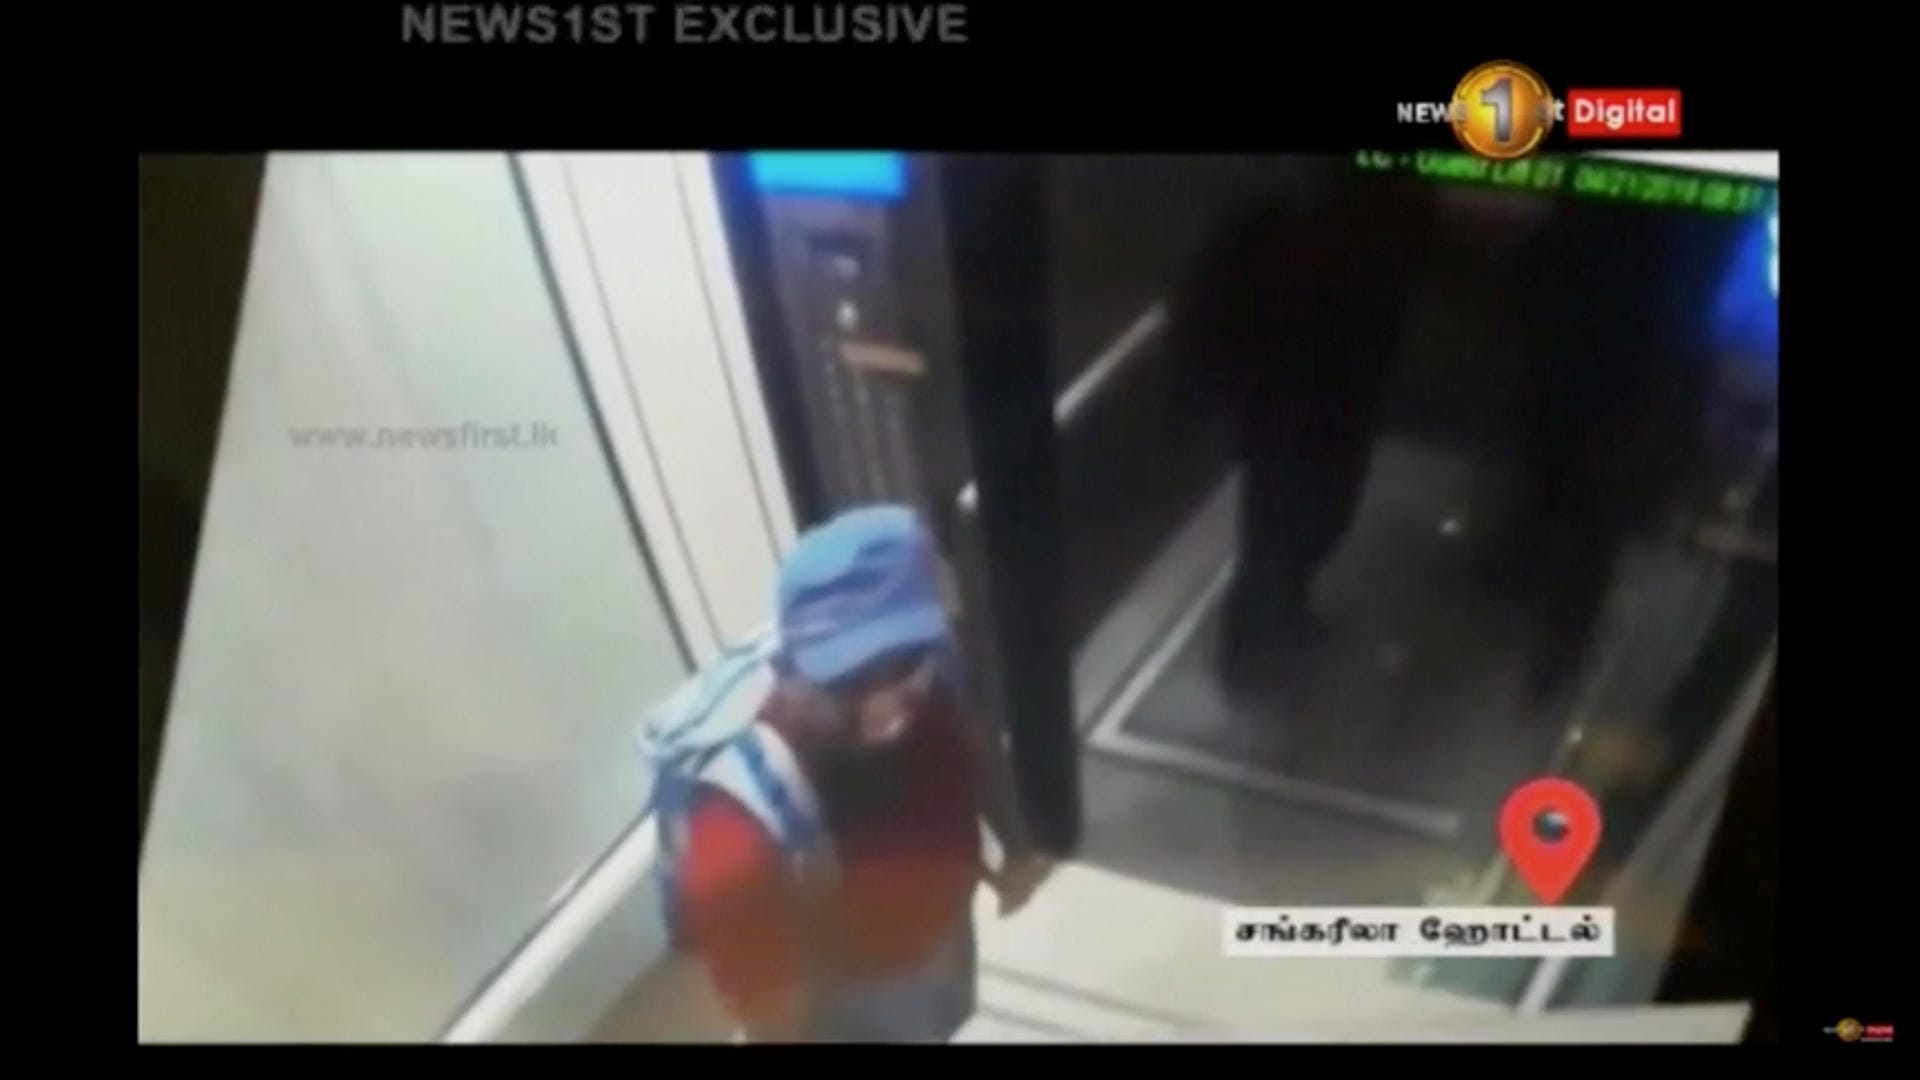 Blaue Basecap, blauer Rucksack, rotes Shirt. Ein mutmaßlicher Attentäter betritt den Fahrstuhl im Luxushotel Shangri-La in der Hauptstadt Colombo. Dort redet er mit einem mutmaßlichen weiteren Terroristen.